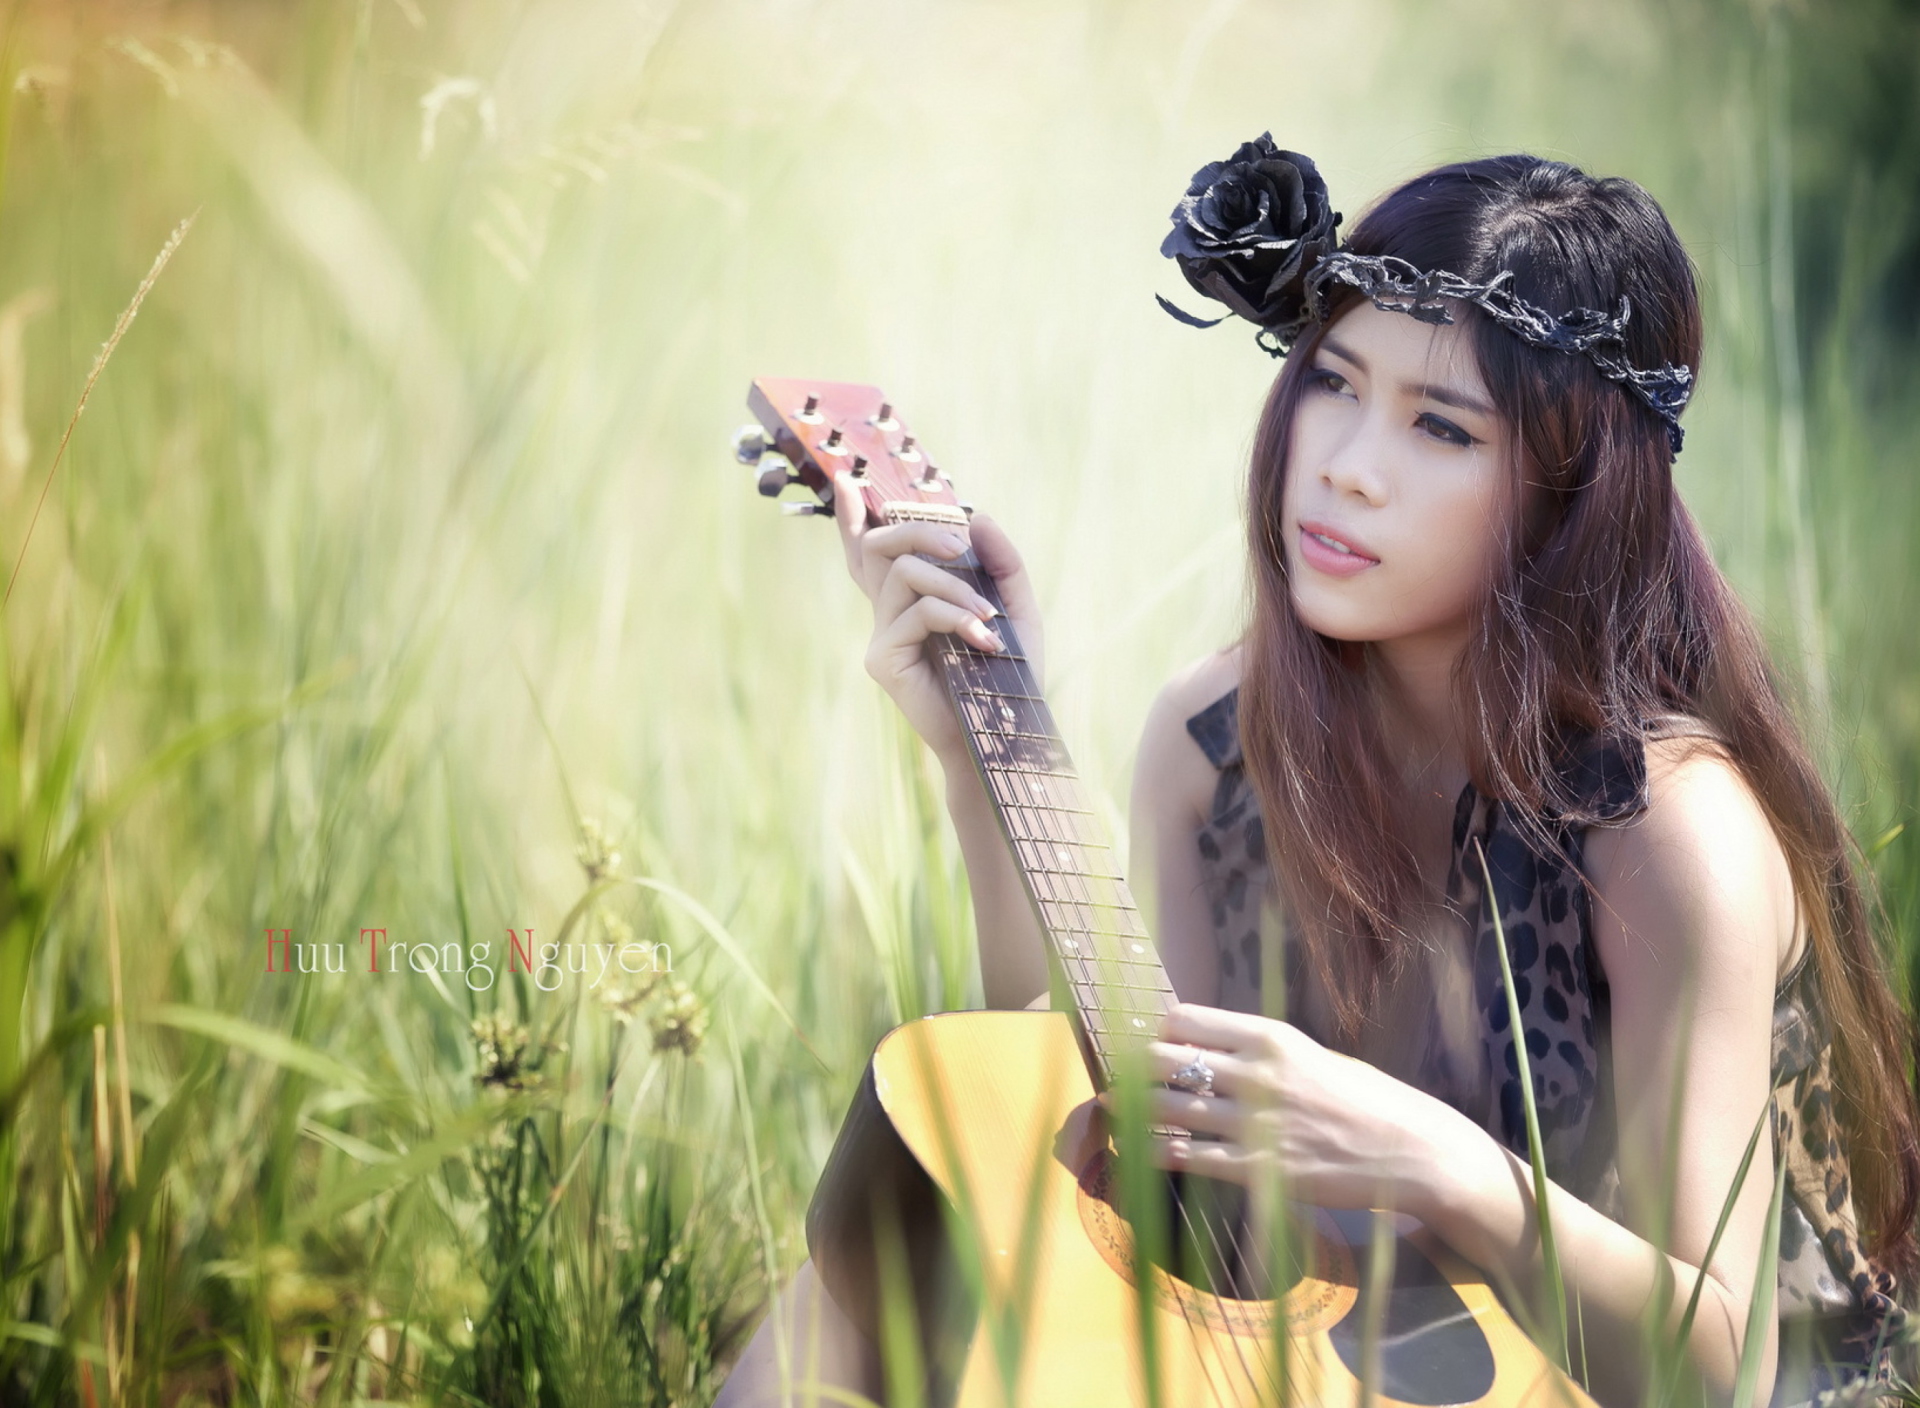 Pretty Girl In Grass Playing Guitar screenshot #1 1920x1408